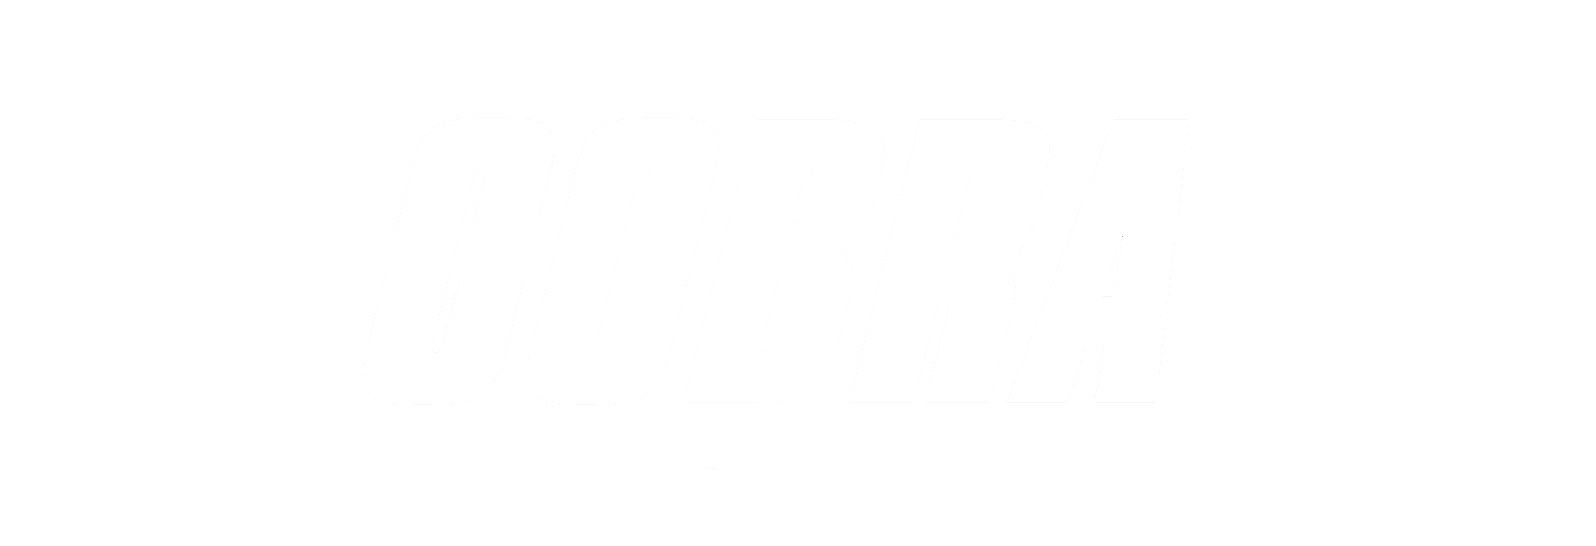 cobra-suspention